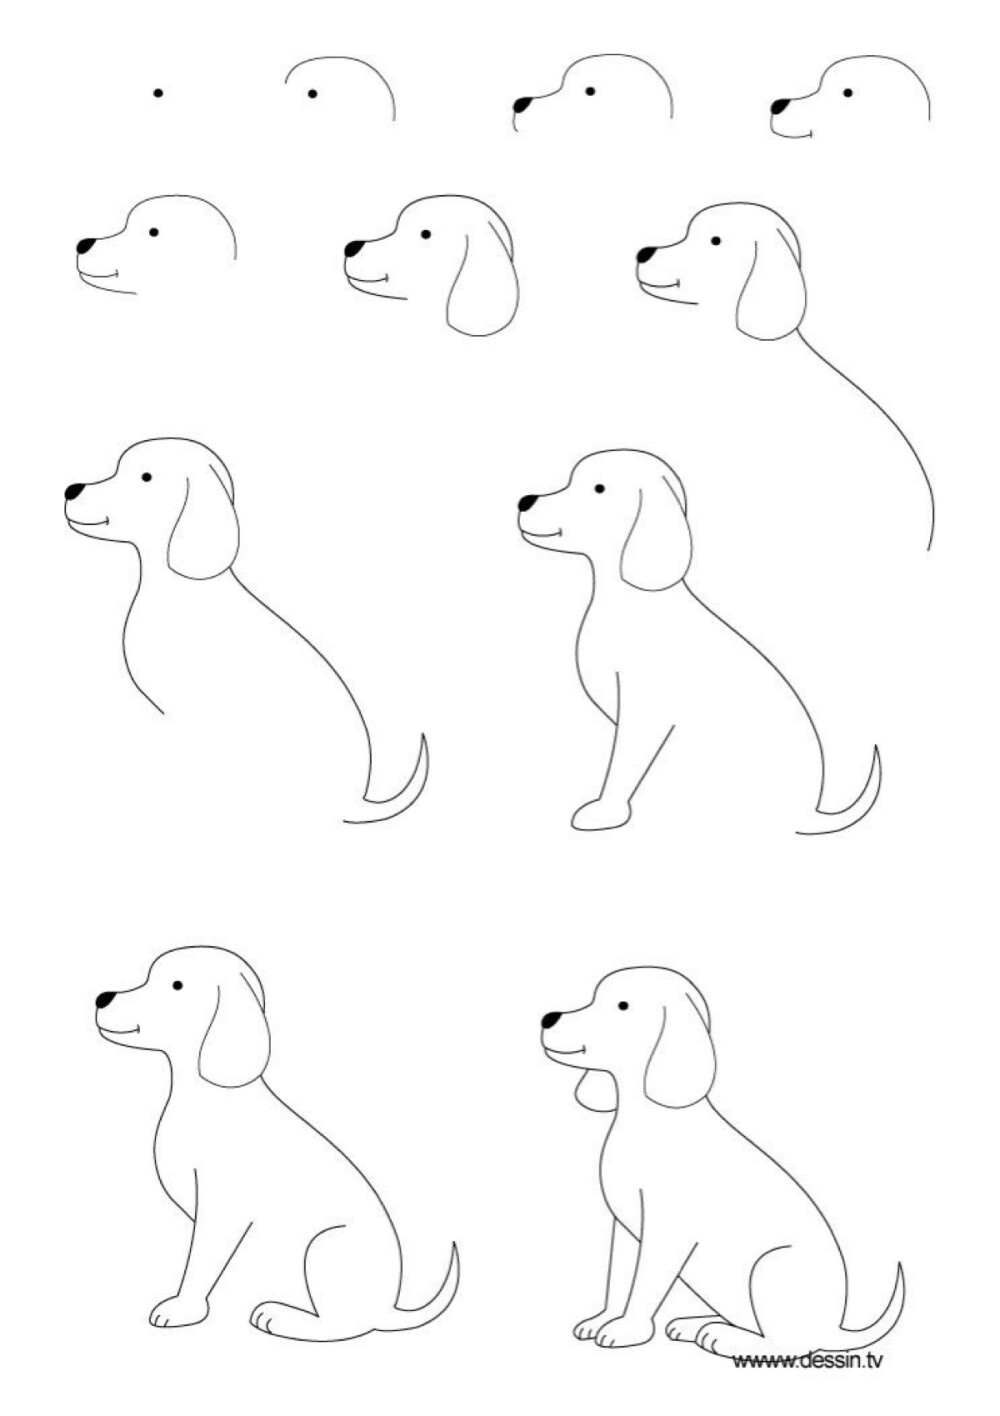 画小狗方法一步一步图片